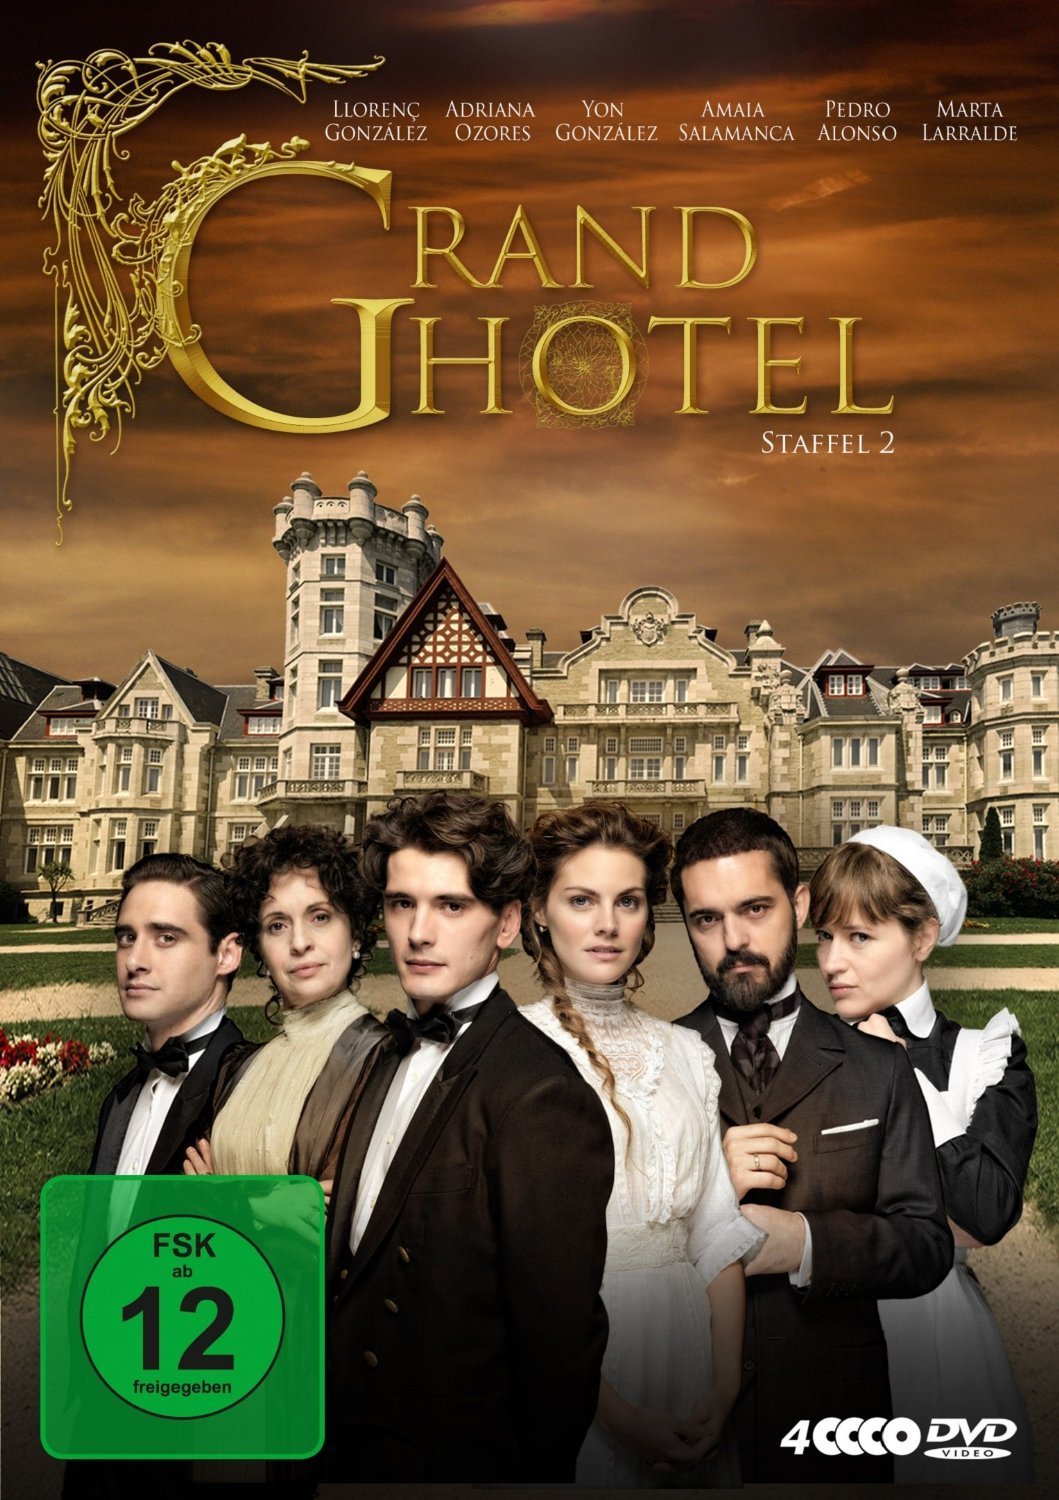 გრანდ ოტელი სეზონი 2 / Gran Hotel season 2 ქართულად